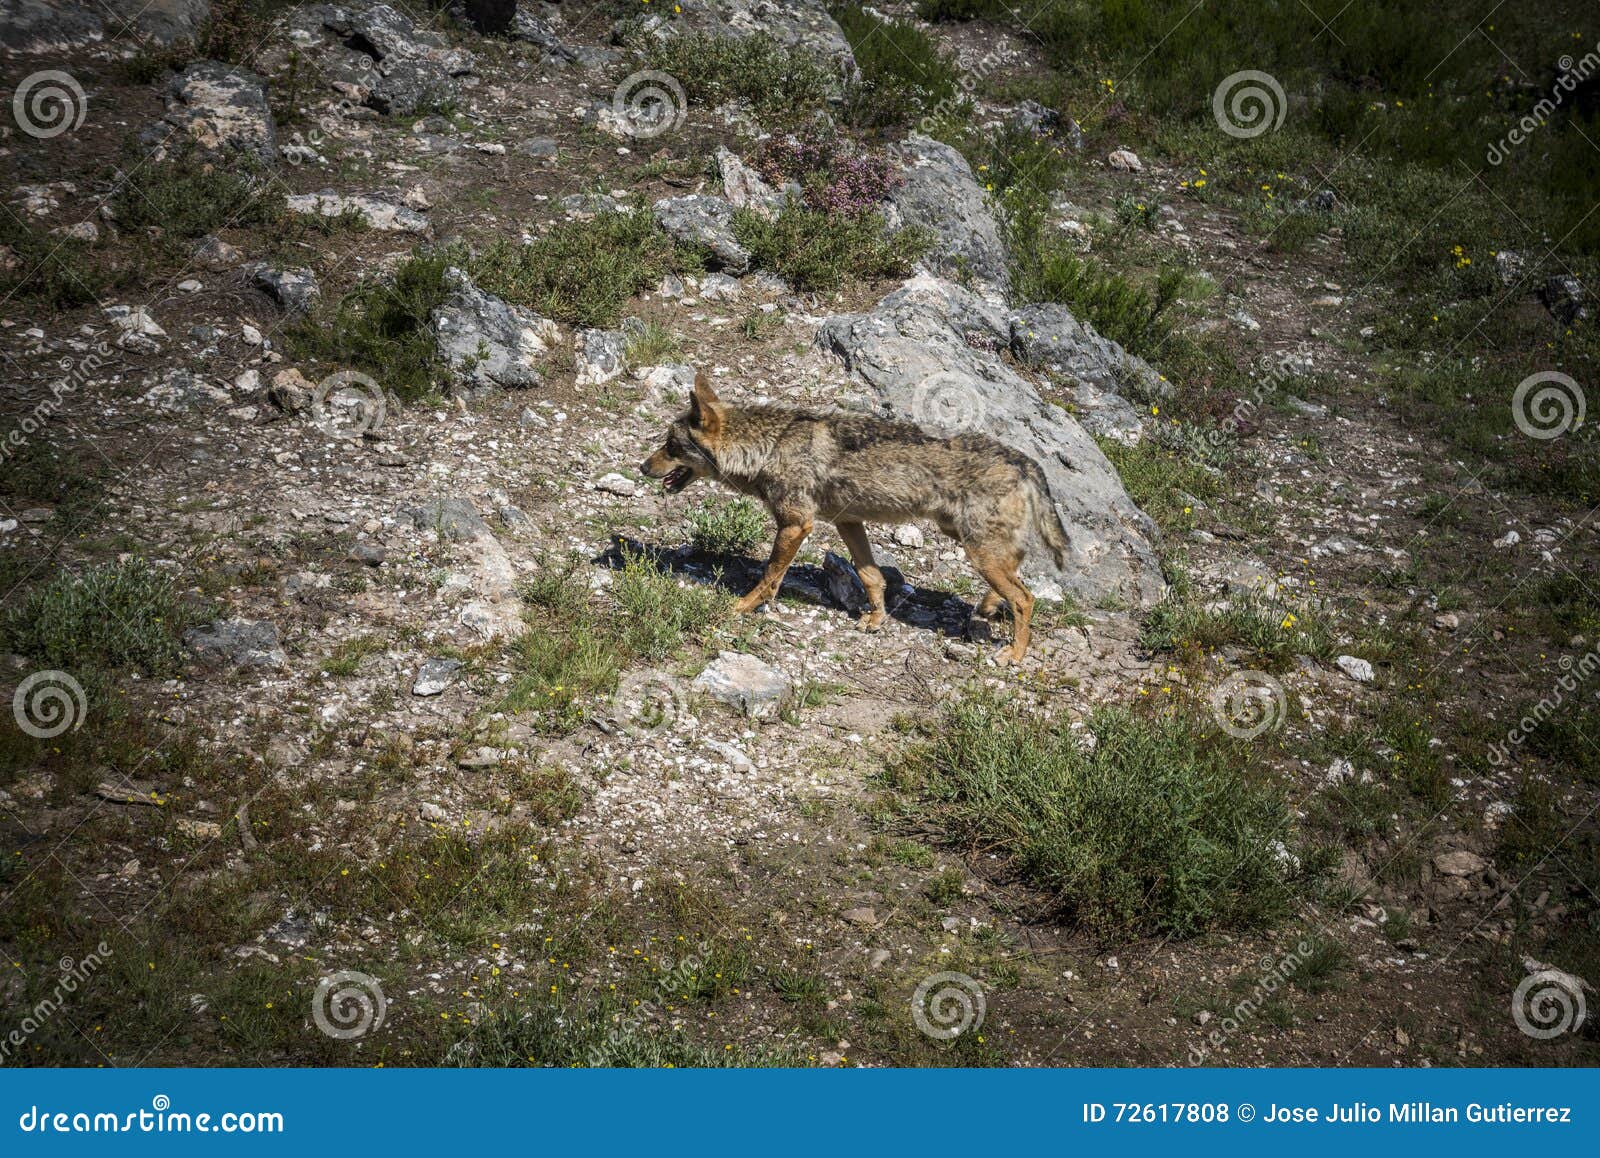 iberian wolf. canis lupus signatus.